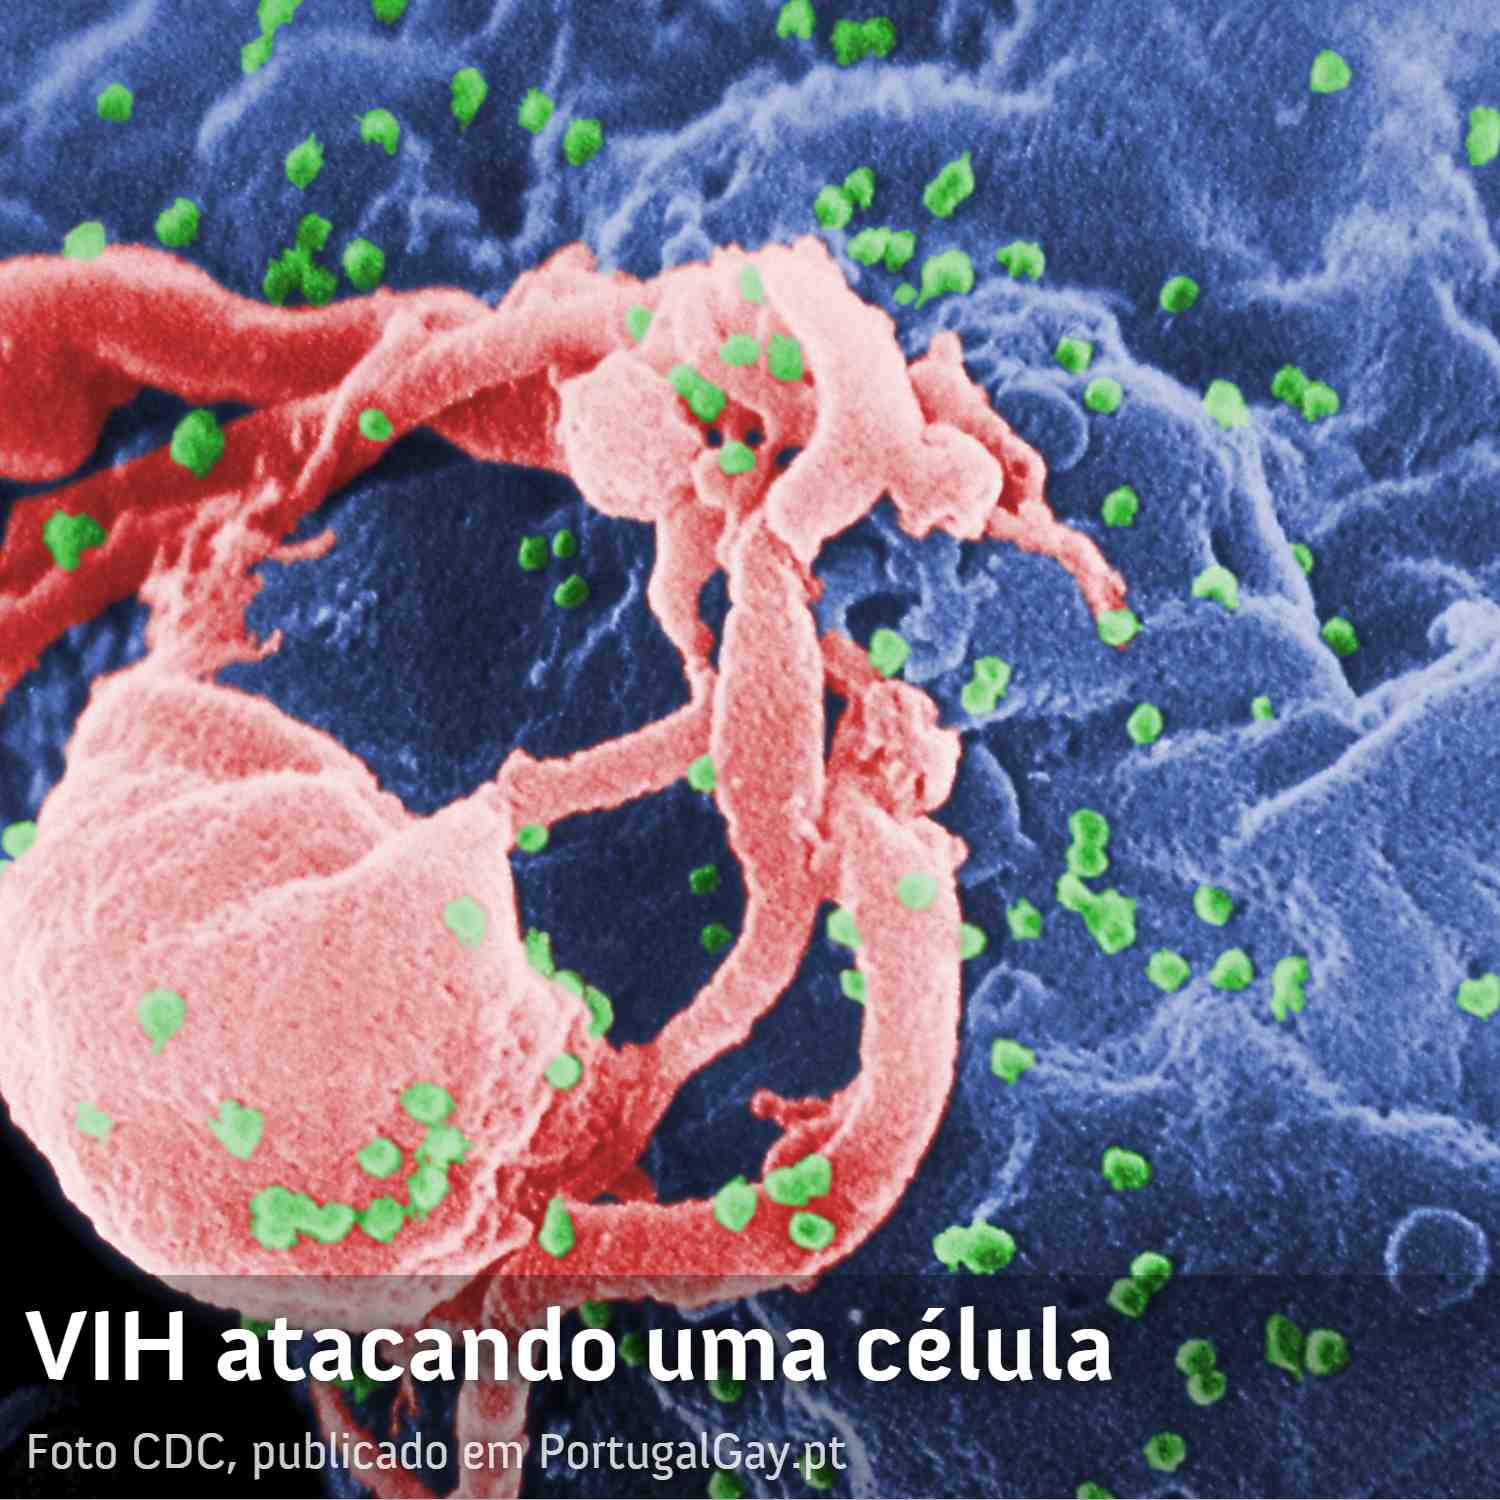 SAÚDE: Algumas pessoas VIH+ conseguem passar anos sem medicação e com o vírus controlado